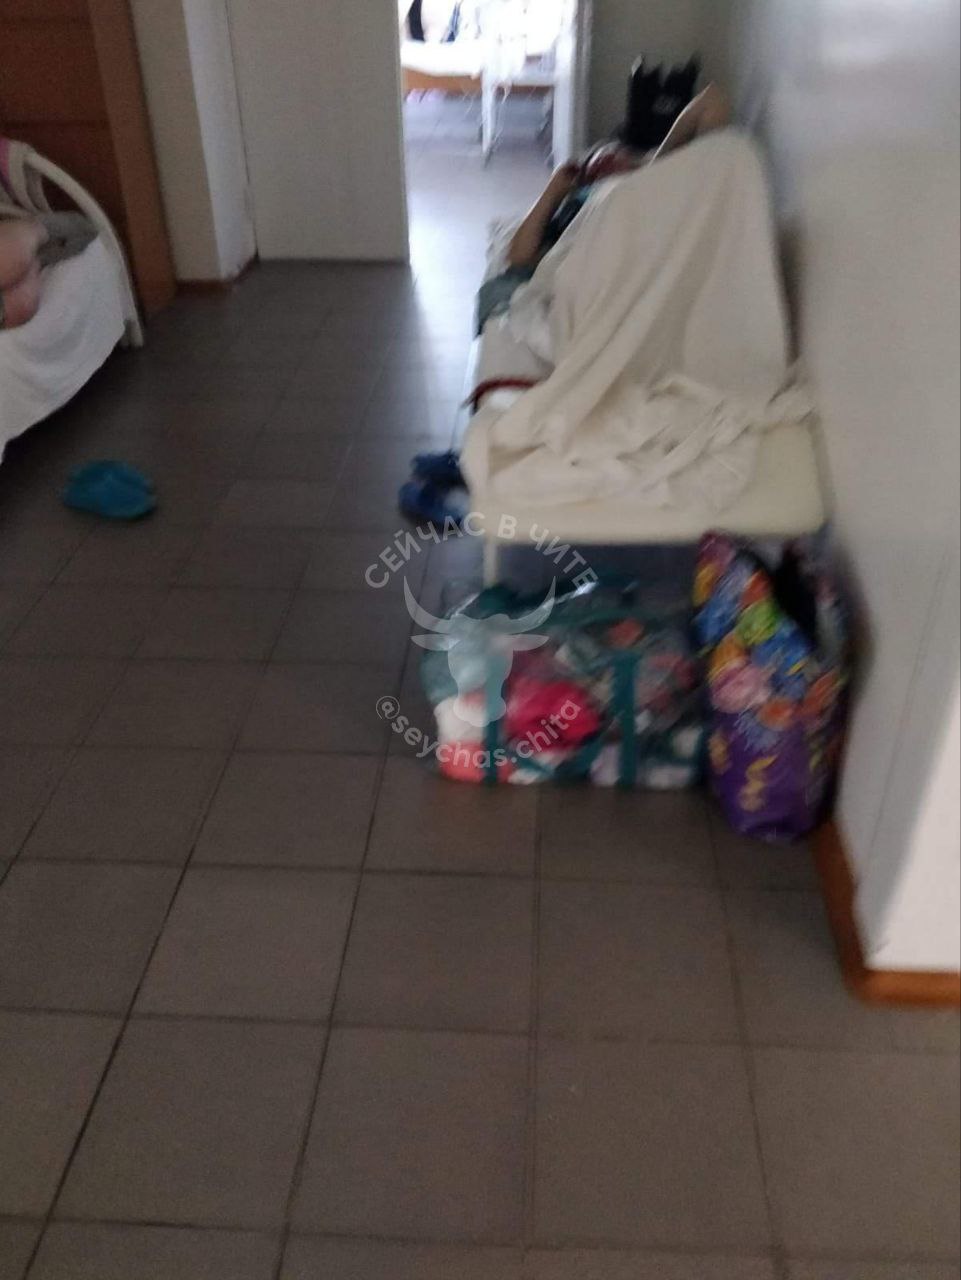 Беременную женщину в Чите положили в коридоре из-за нехватки мест